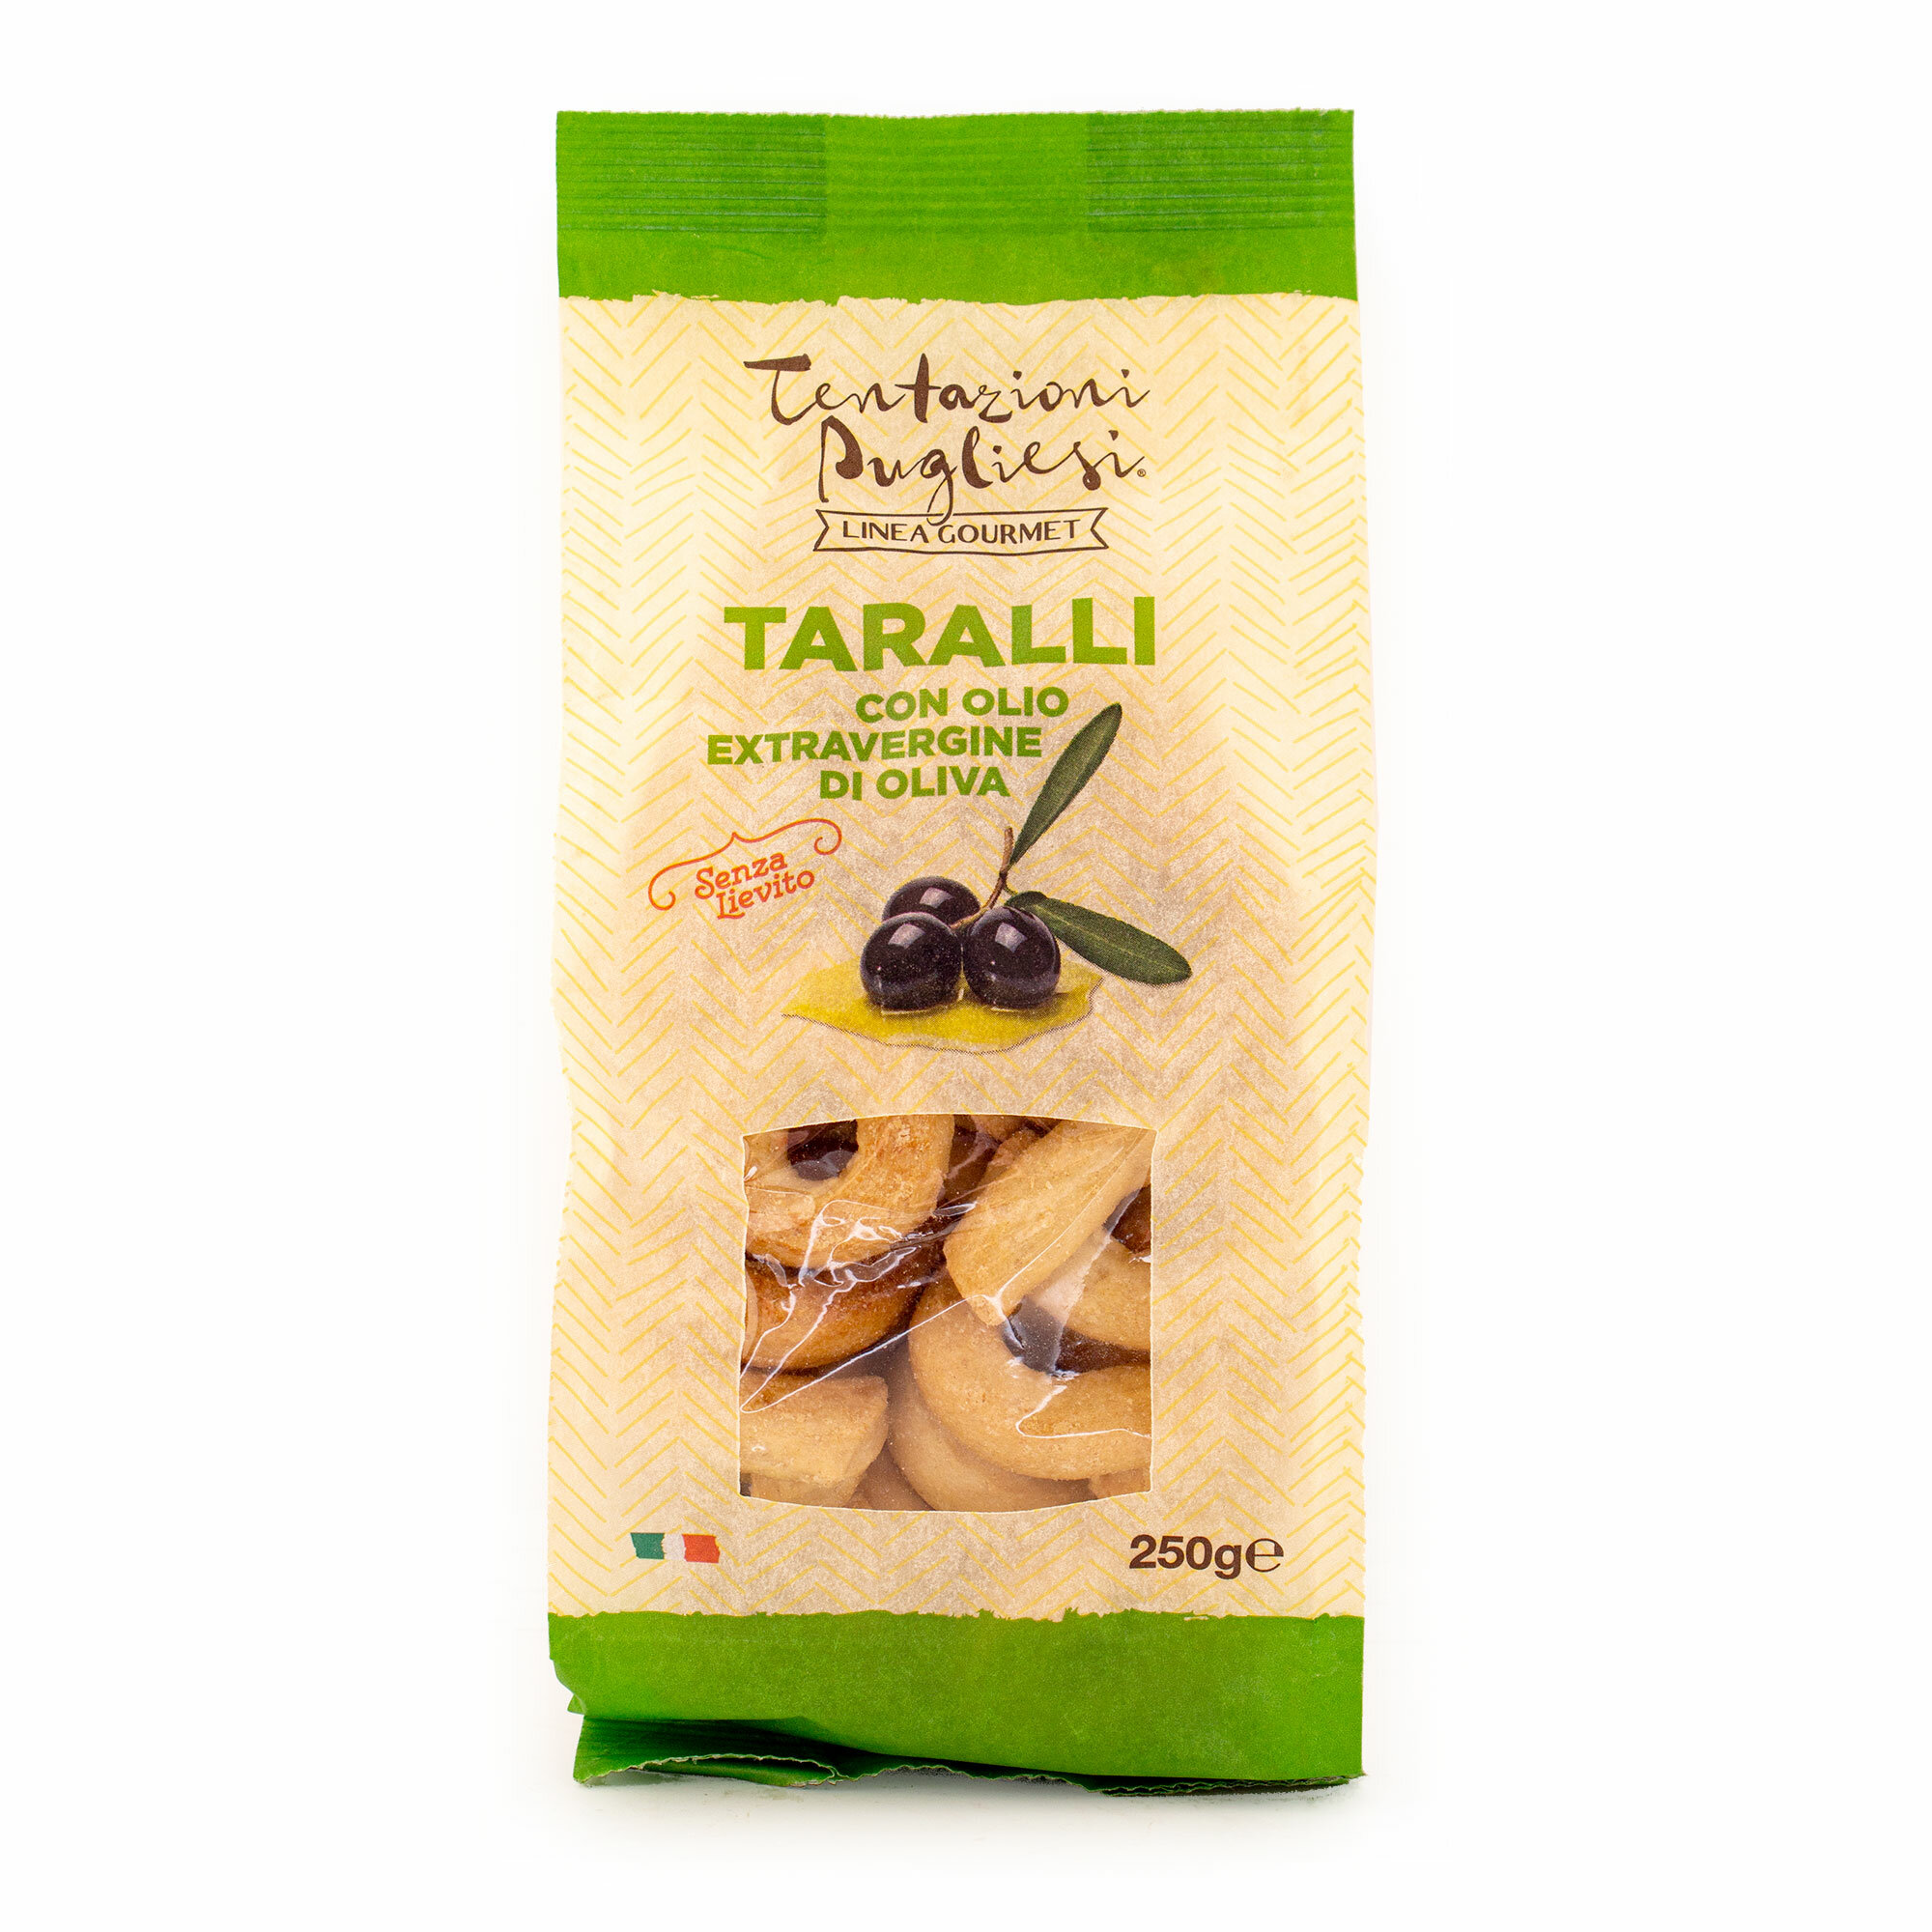 Таралли с оливковым маслом первого холодного отжима (экстра верджин) LINEA GOURMET, TENTAZIONI PUGLIESI, 0,250 кг